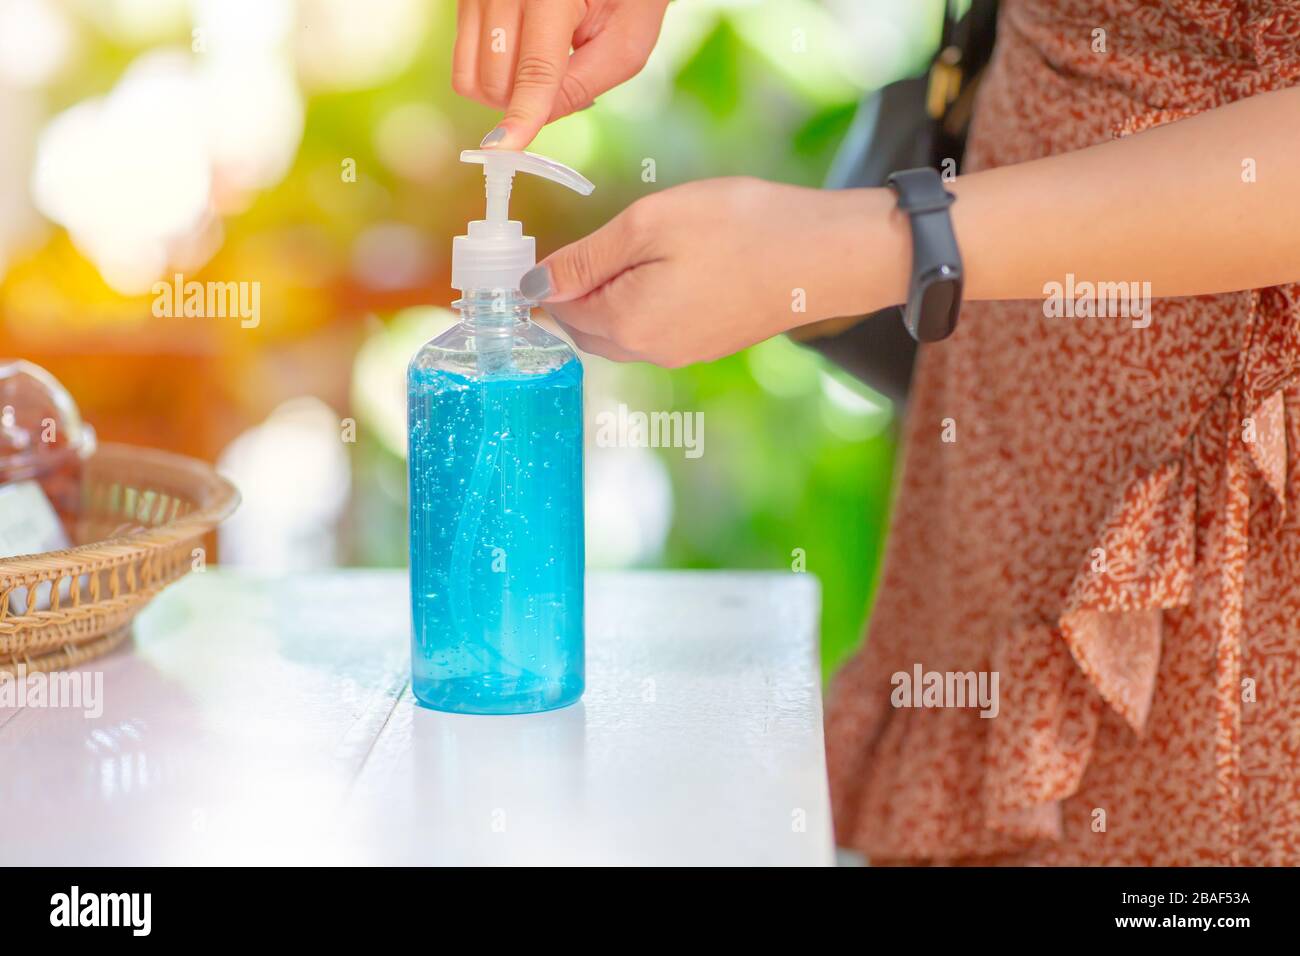 Les personnes qui nettoyent les mains à l'aide de nettoyants désinfectants pour les mains à base de gel d'alcool pour anti-bectéria et protègent contre les éclosions de virus de la maladie du Coronavirus 2019 (COVID-19). Banque D'Images